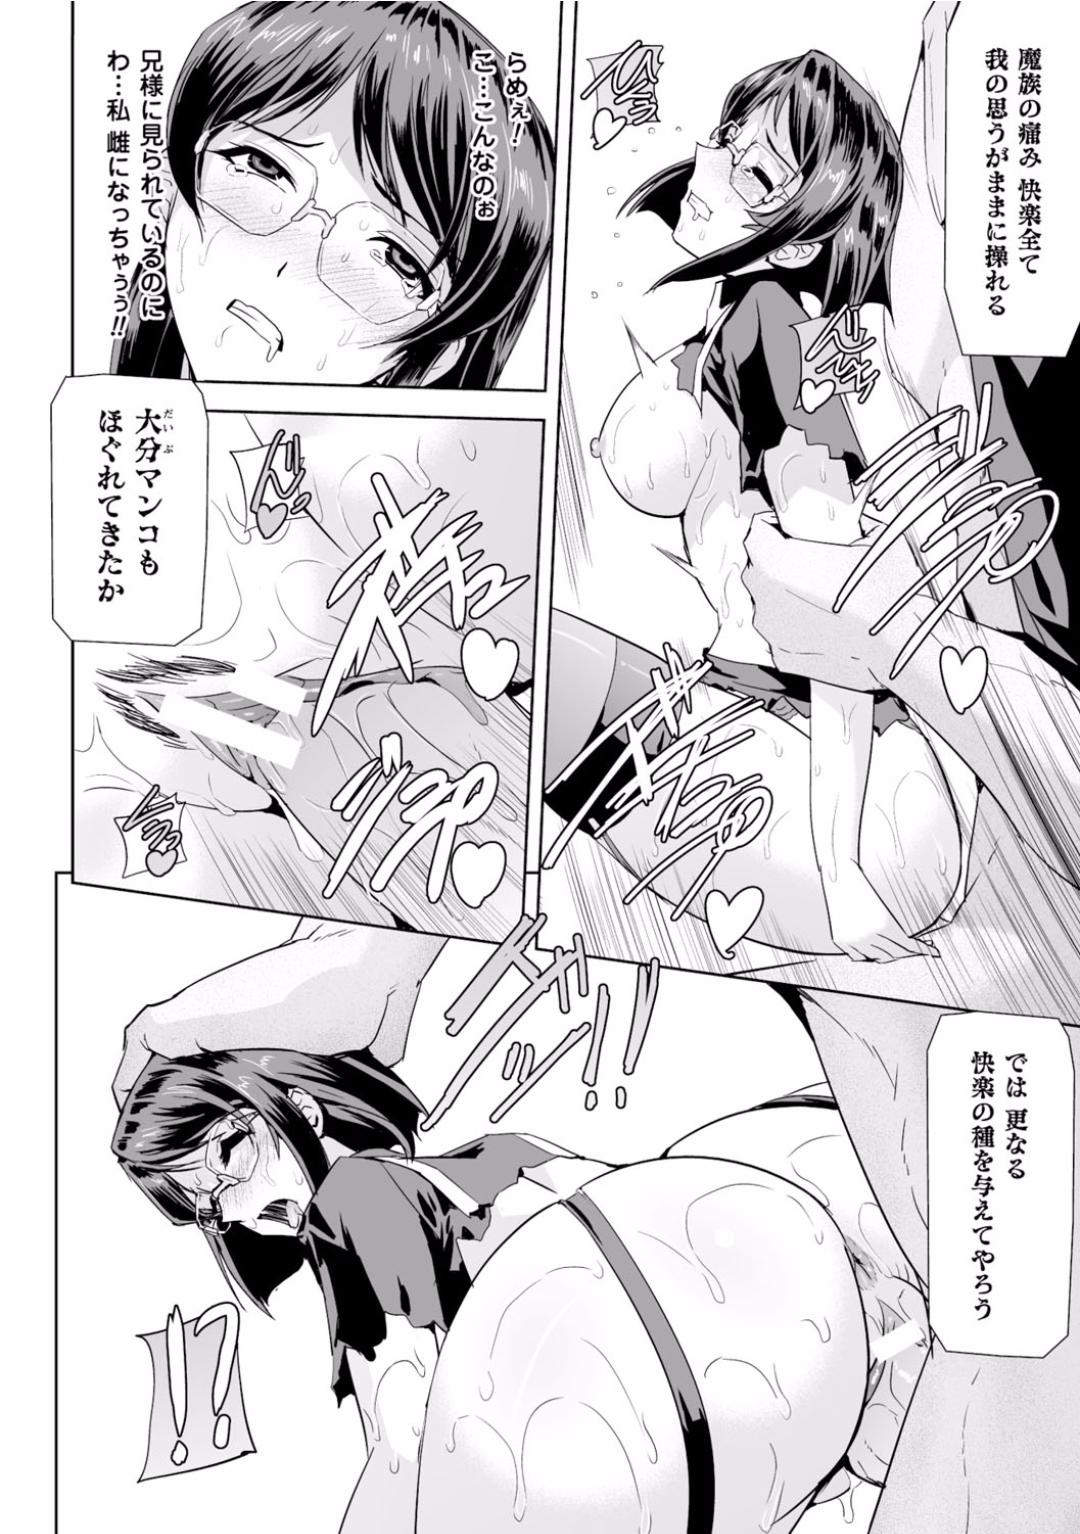 Seigi no Heroine Kangoku File Vol. 2 25